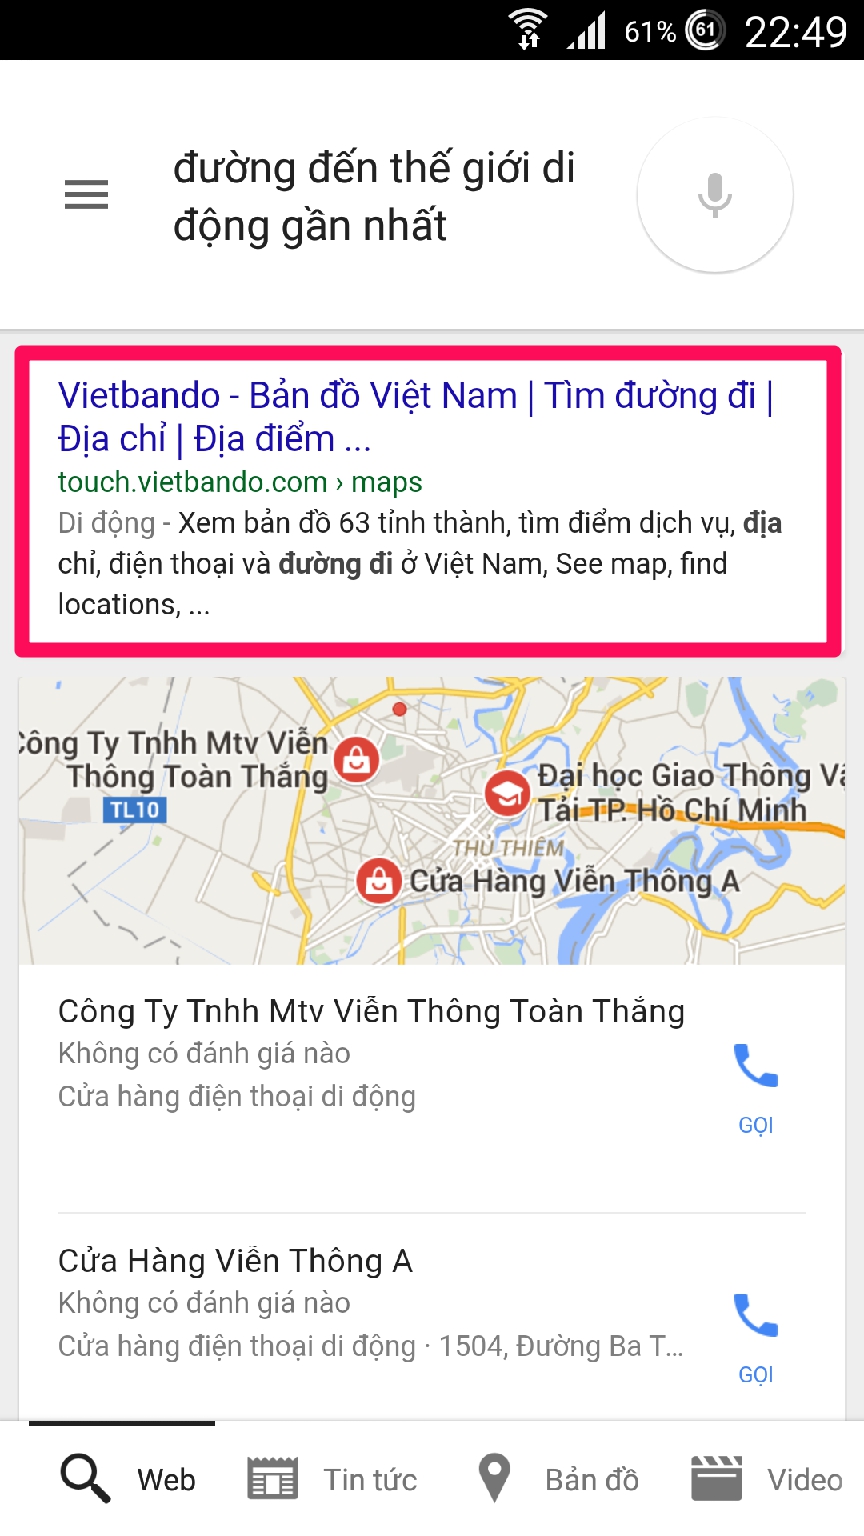 Dùng Google Now tìm kiếm giọng nói bằng tiếng Việt